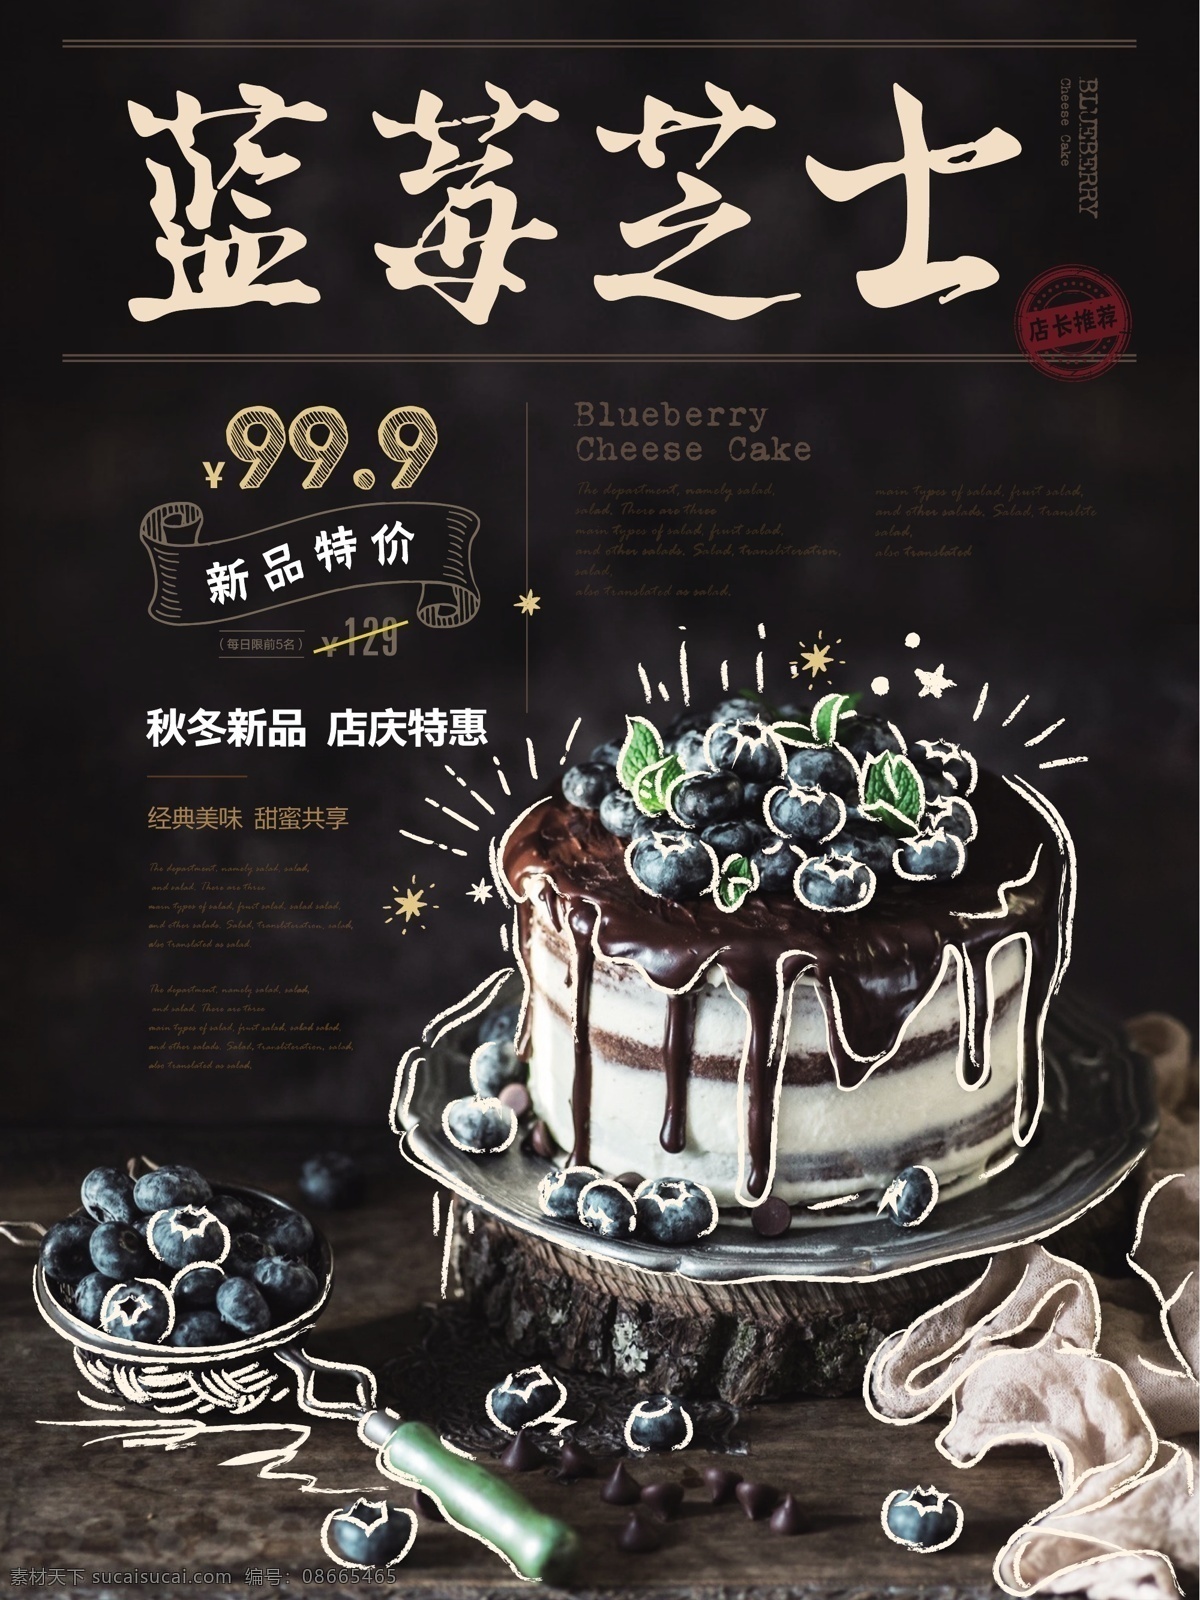 简约 手绘 风 蓝莓 蛋糕 促销 海报 蛋糕店 美食 健康 手绘风 蓝莓蛋糕